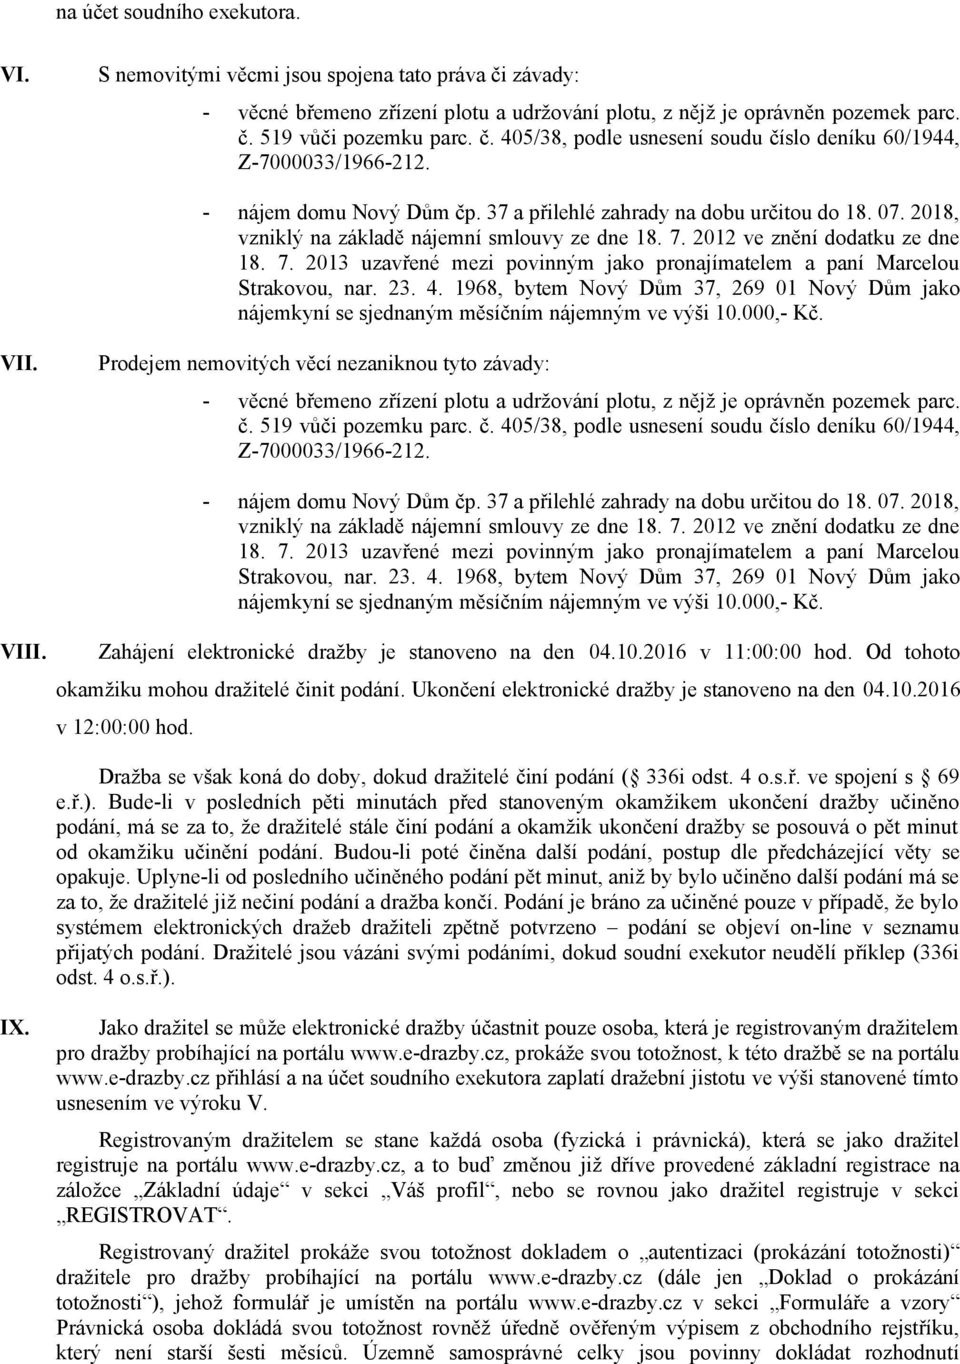 2012 ve znění dodatku ze dne 18. 7. 2013 uzavřené mezi povinným jako pronajímatelem a paní Marcelou Strakovou, nar. 23. 4.